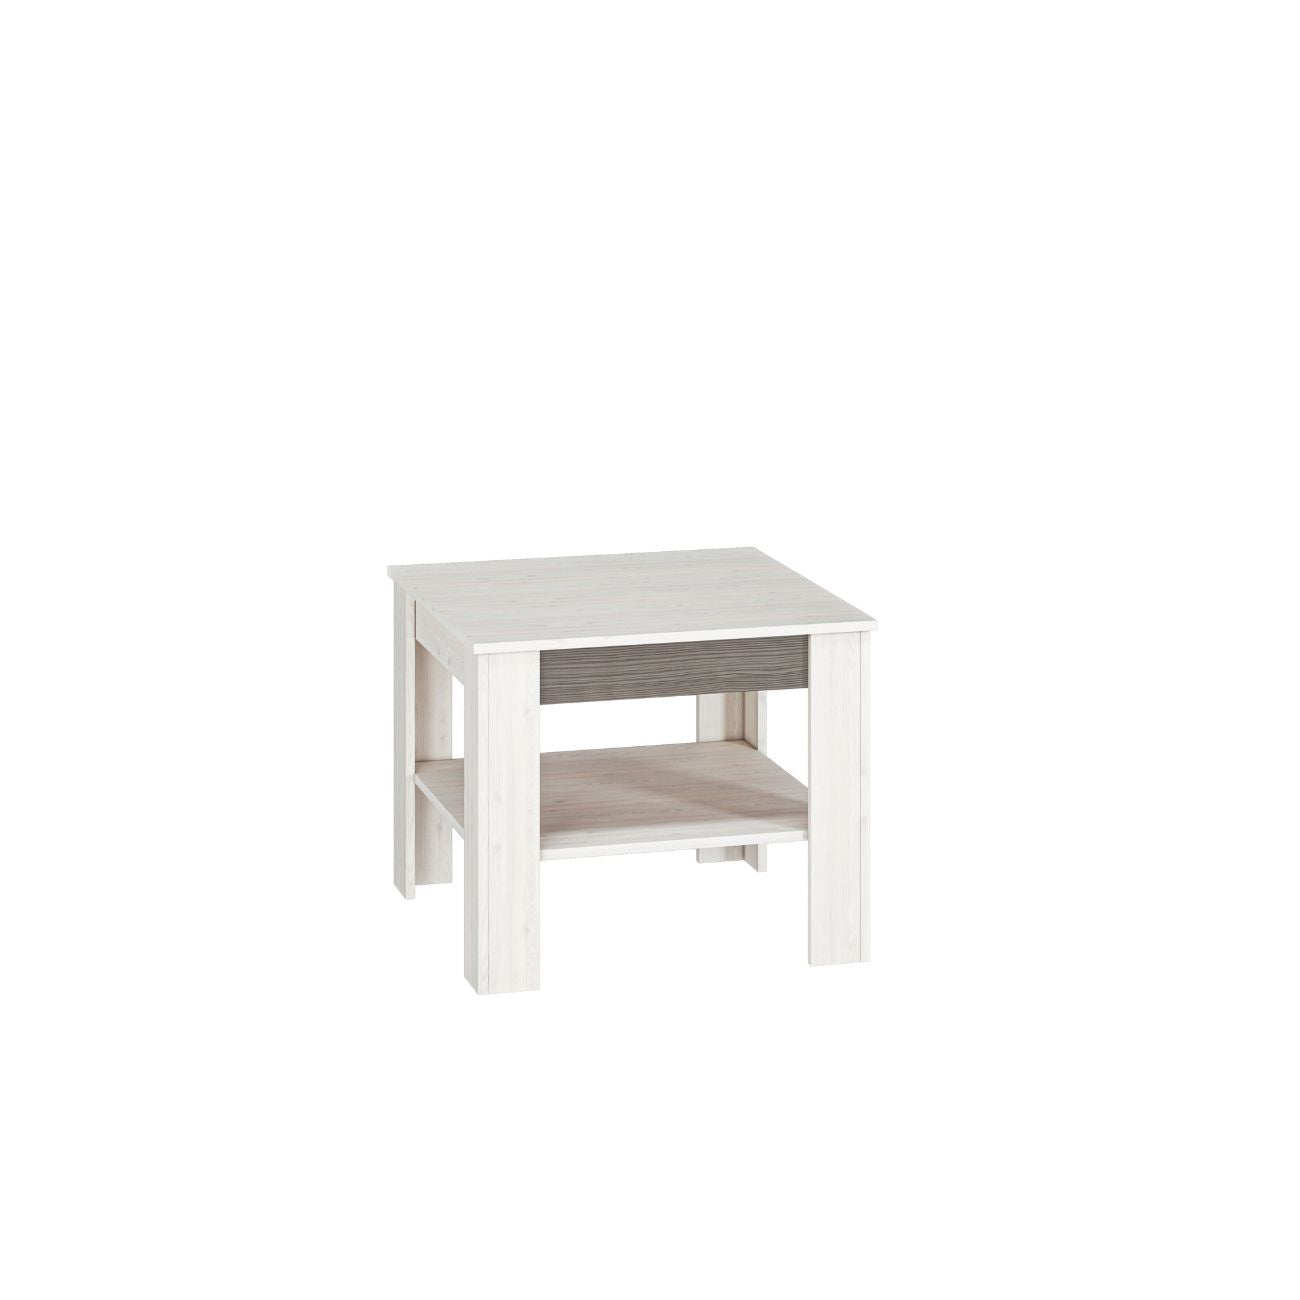 Zdjęcie przedstawiające mały stolik kawowy Blanka 67x67 cm z półką pod blatem